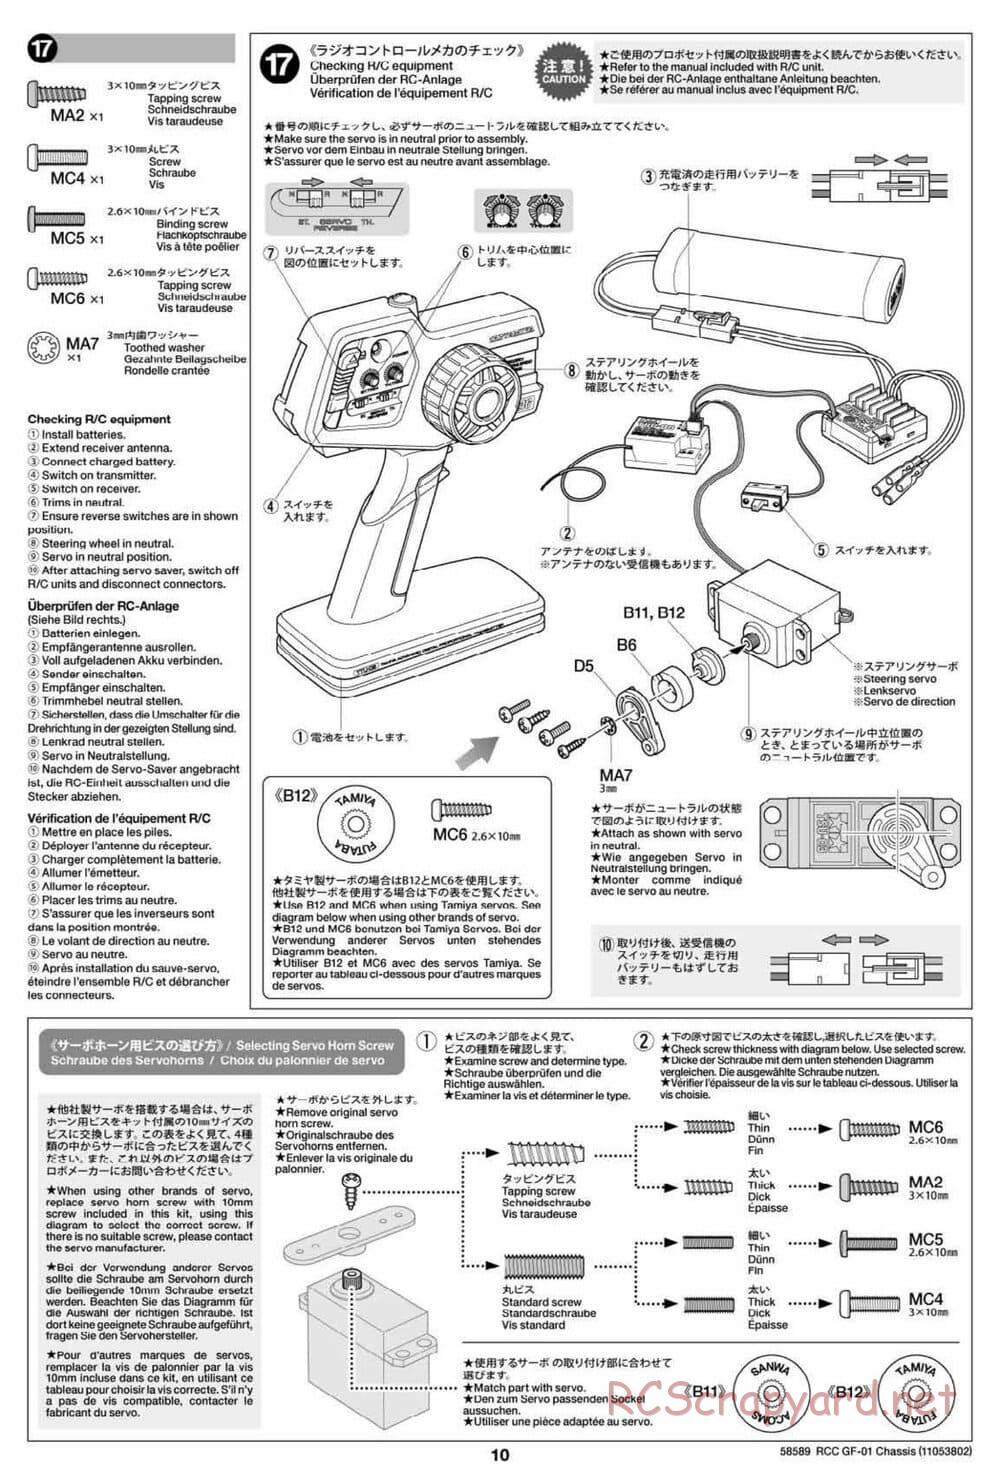 Tamiya - GF-01 Chassis - Manual - Page 10